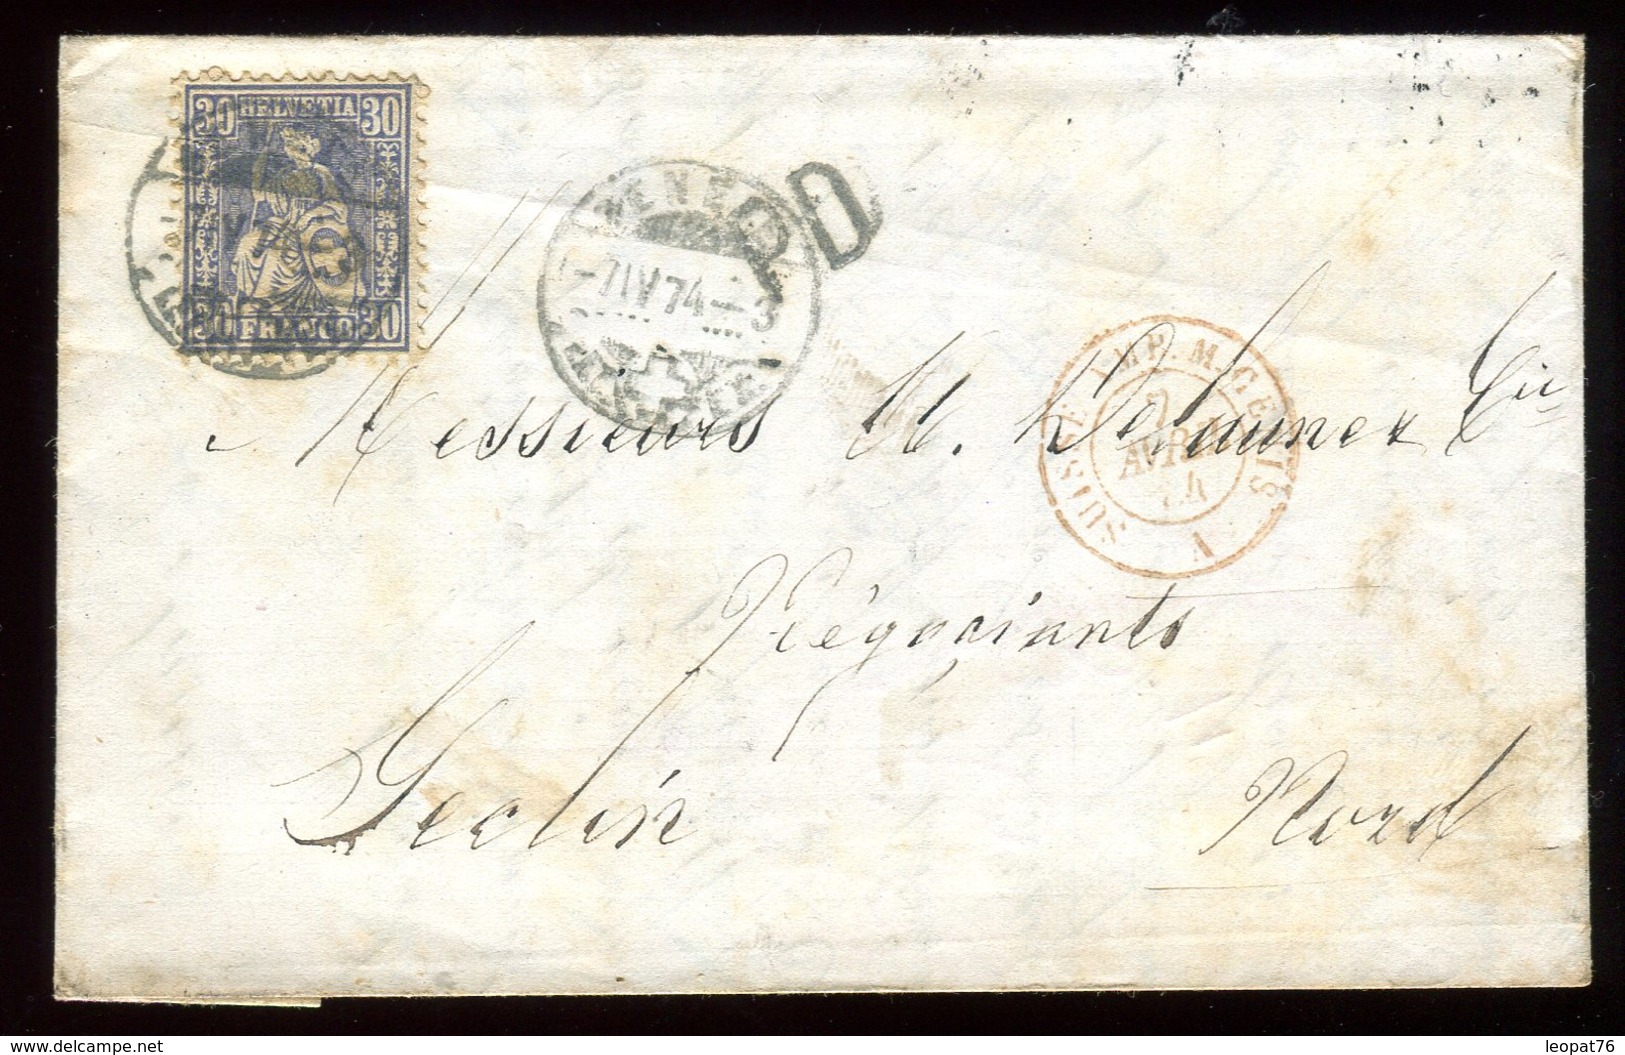 Suisse - Lettre Avec Texte De Genève Pour Seclin En 1874 - Réf O6 - Briefe U. Dokumente